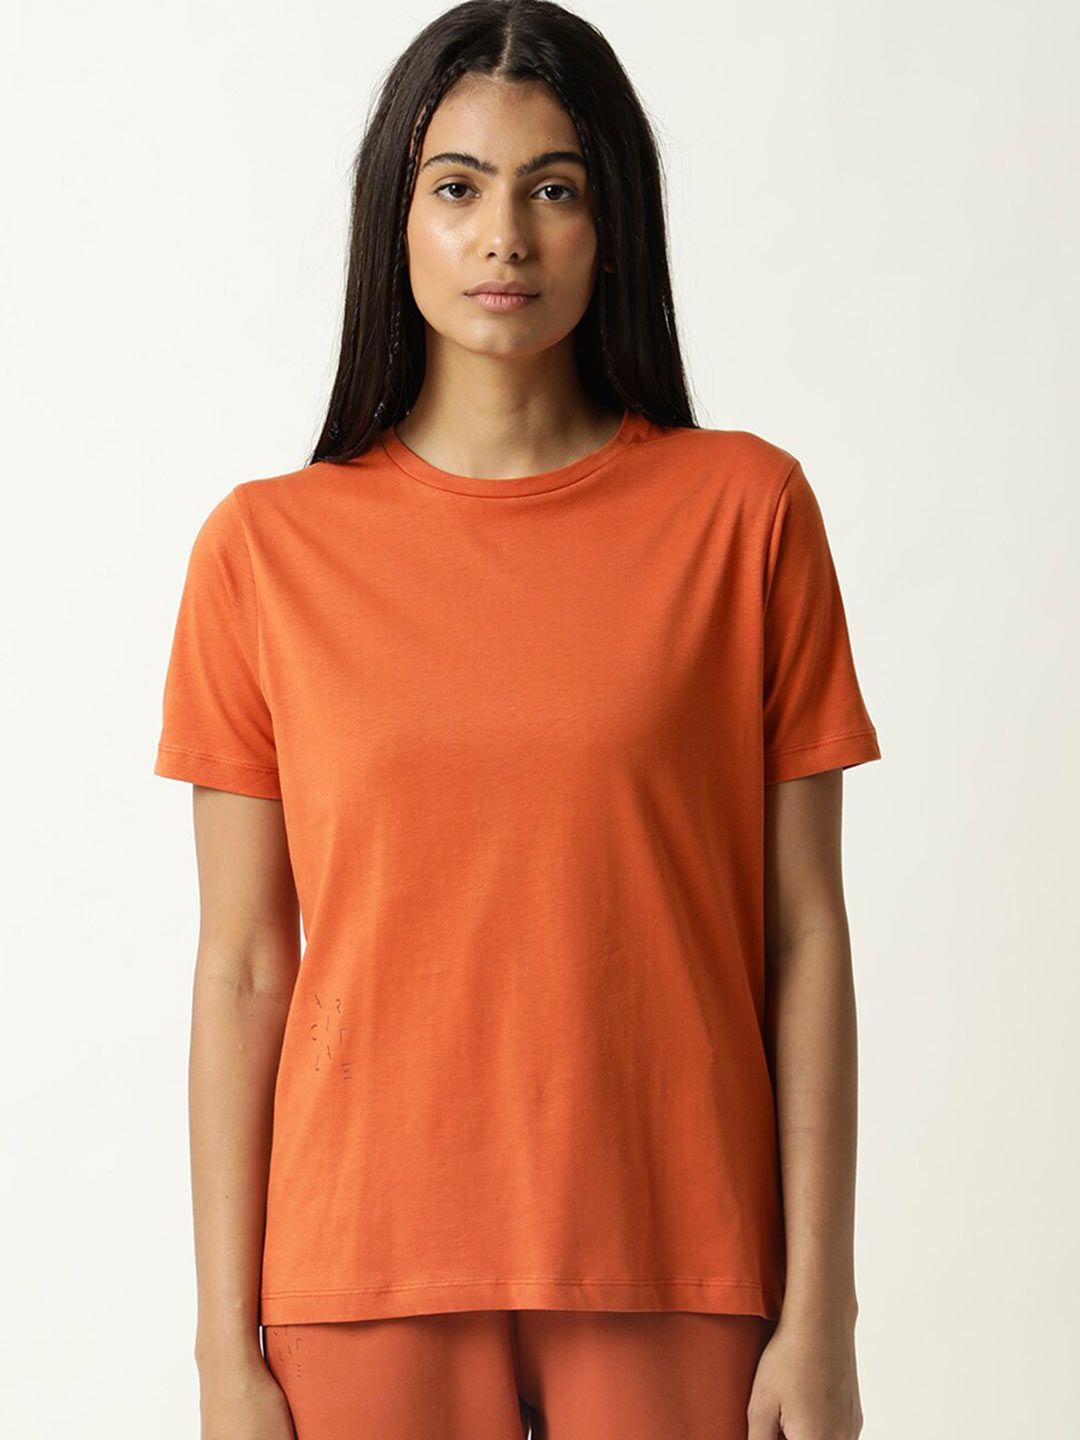 articale-women-orange-solid-slim-fit-cotton-t-shirt